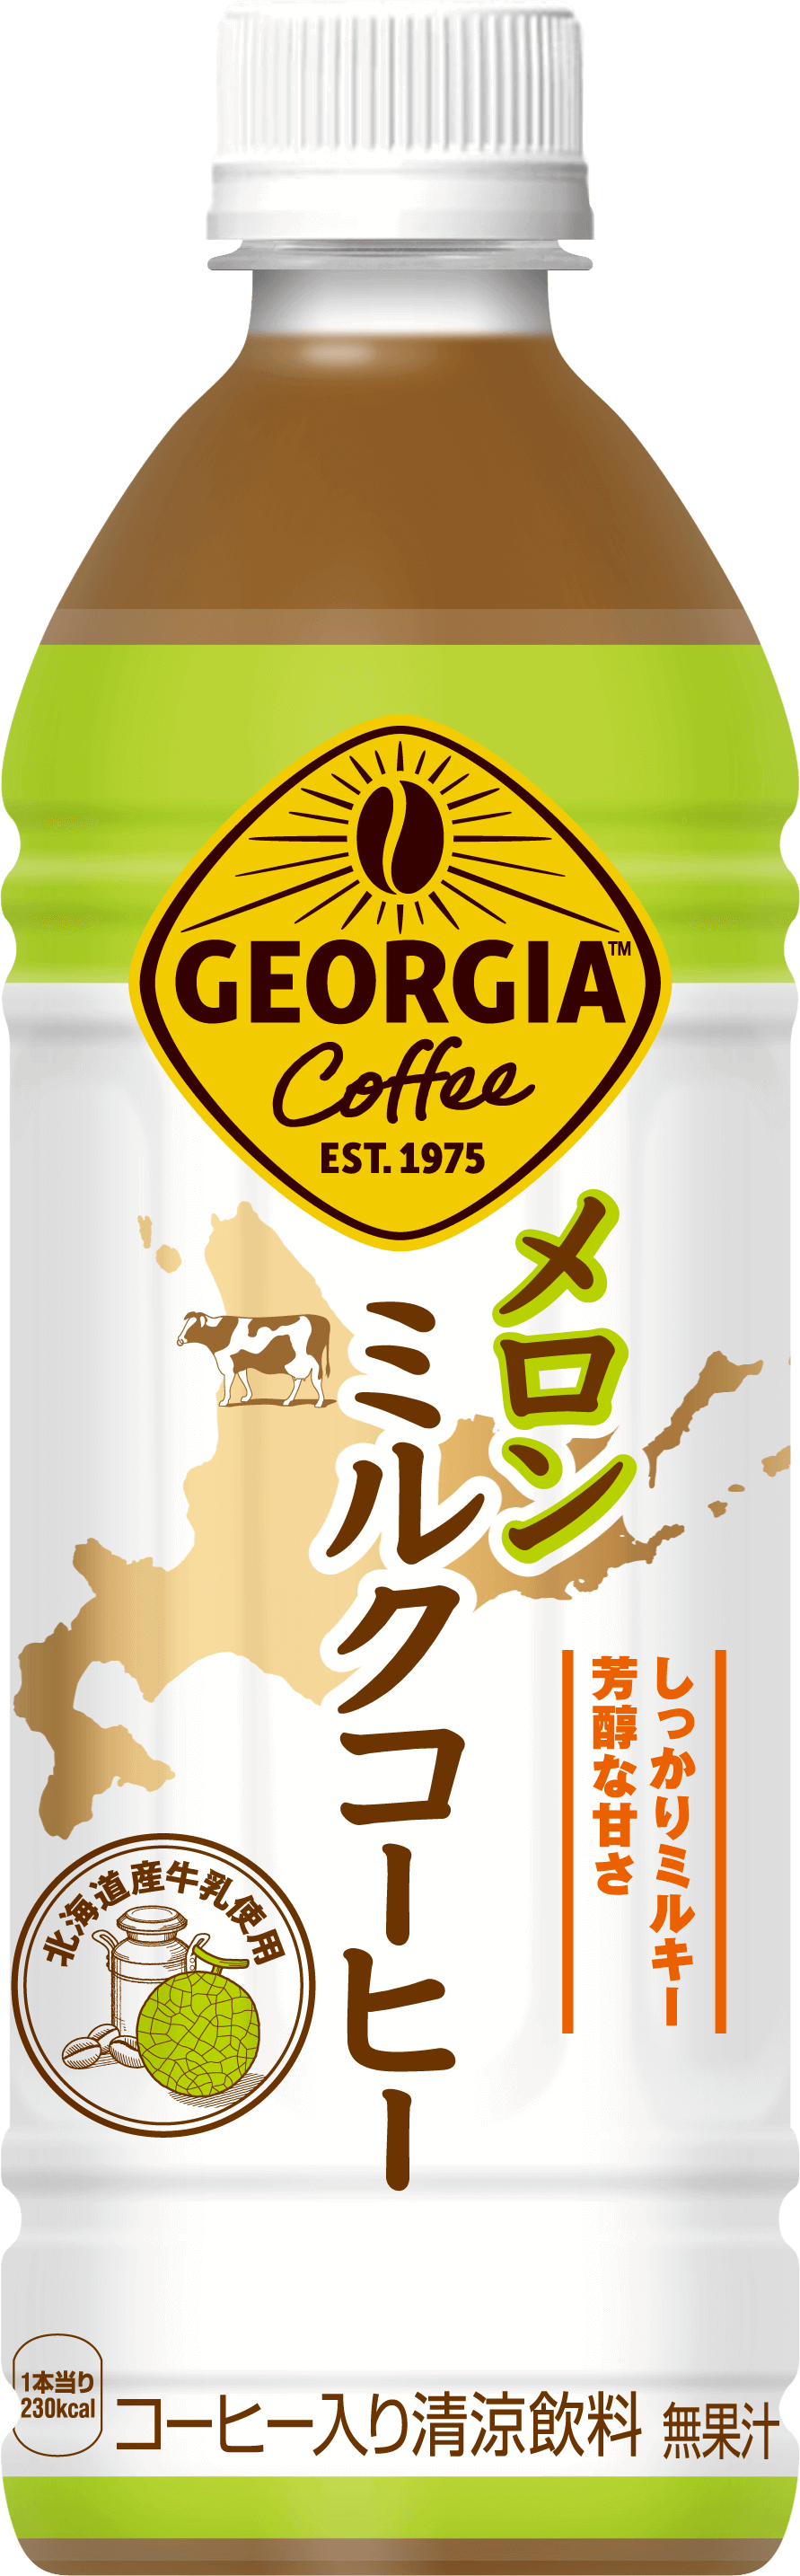 『ジョージア メロンミルクコーヒー』